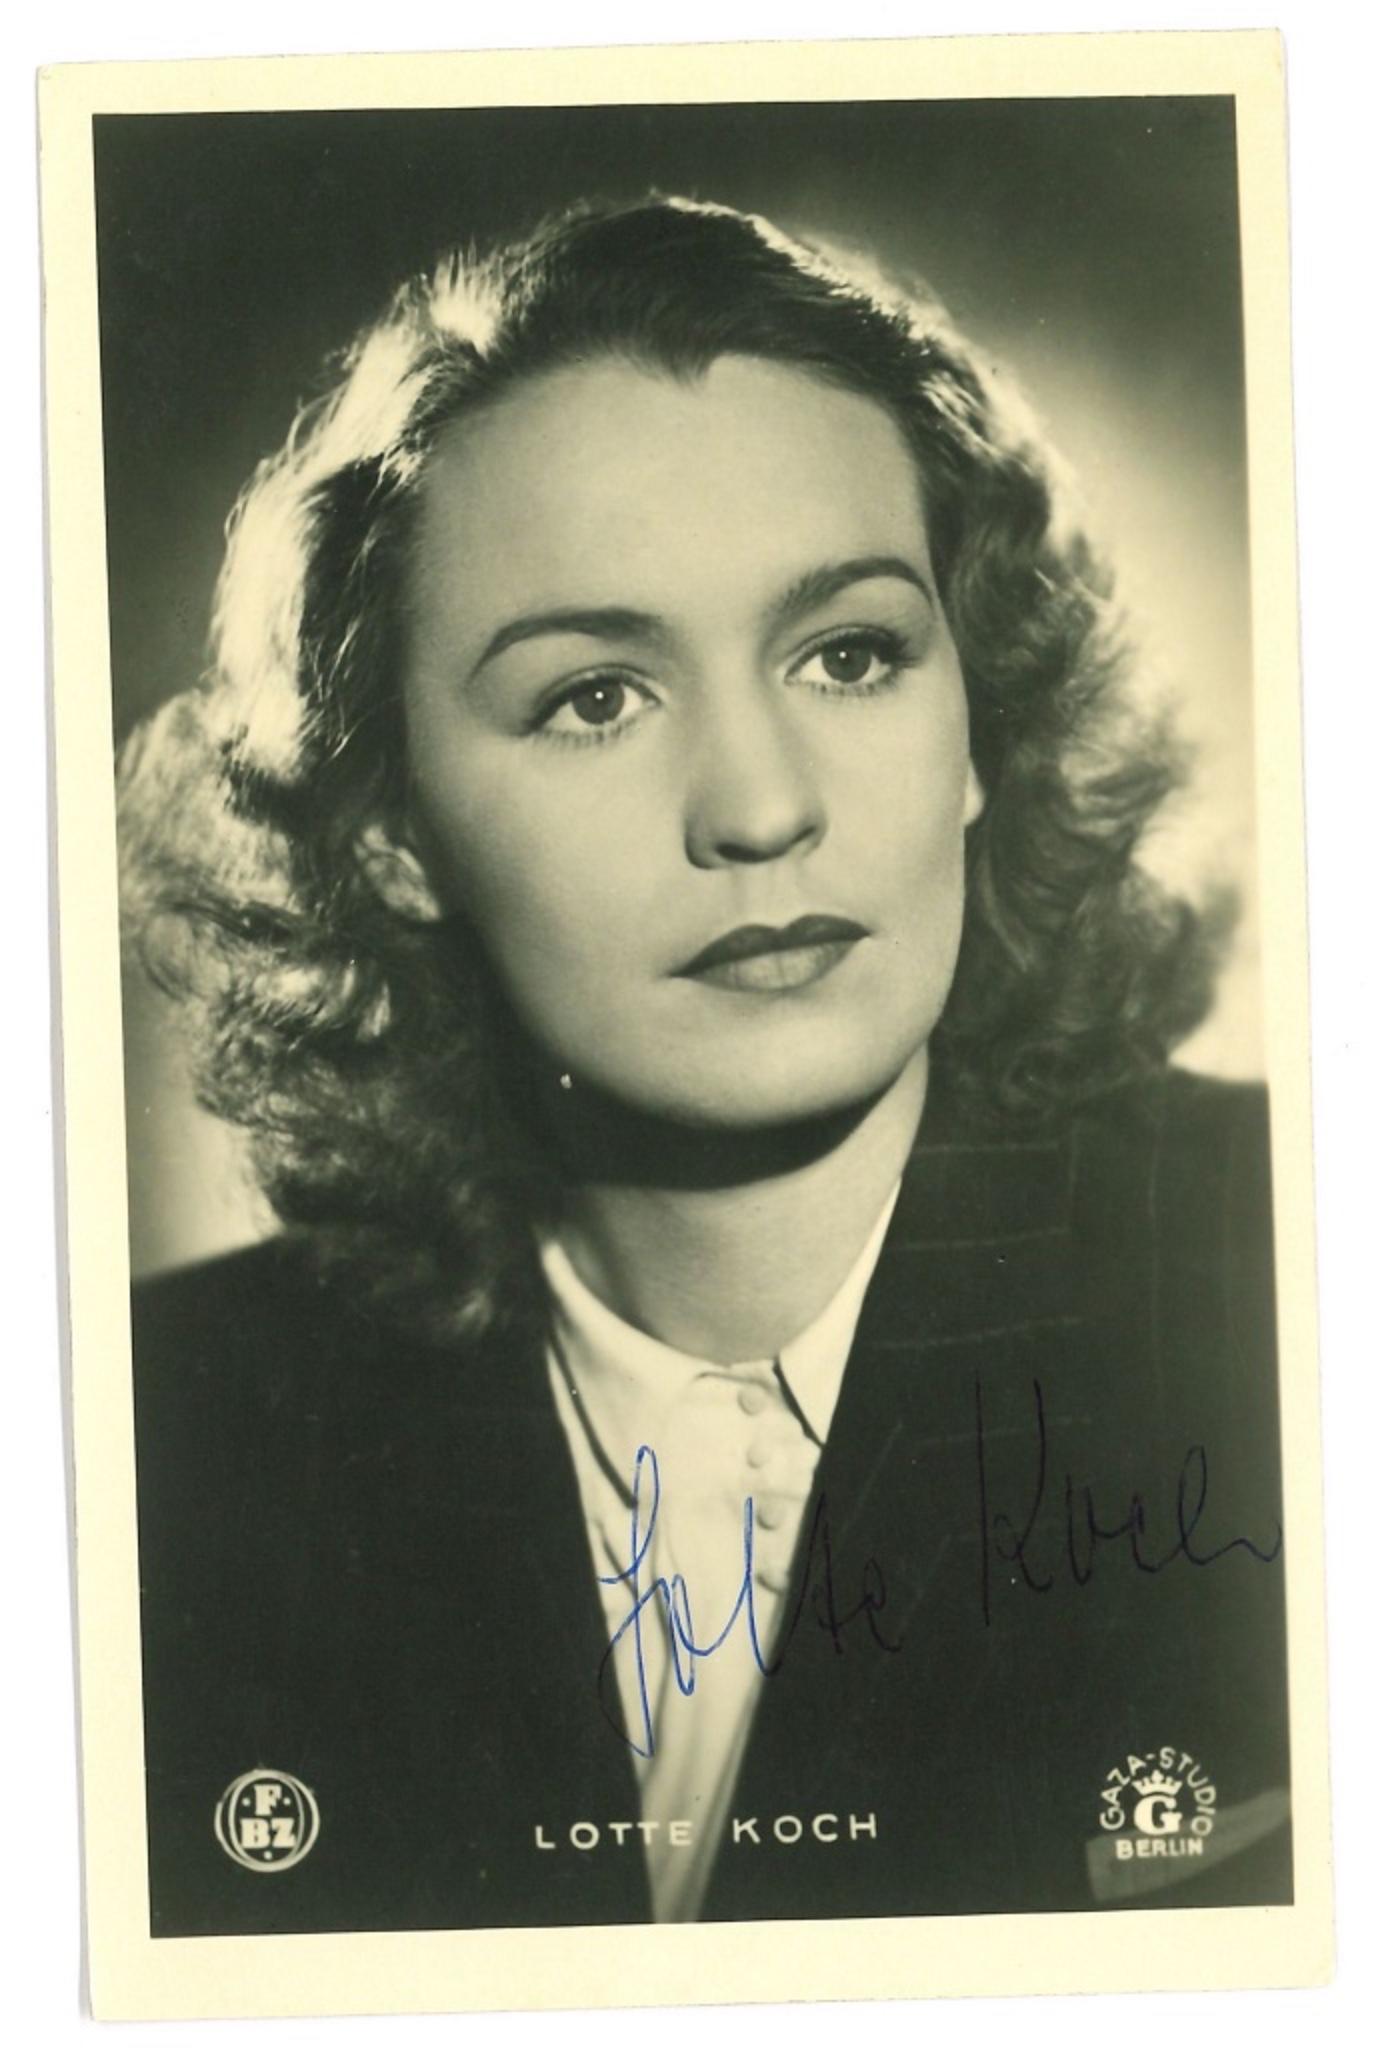 Unknown Portrait Photograph - Autographed Portrait of Lotte Koch - Original b/w Postcard - 1950s